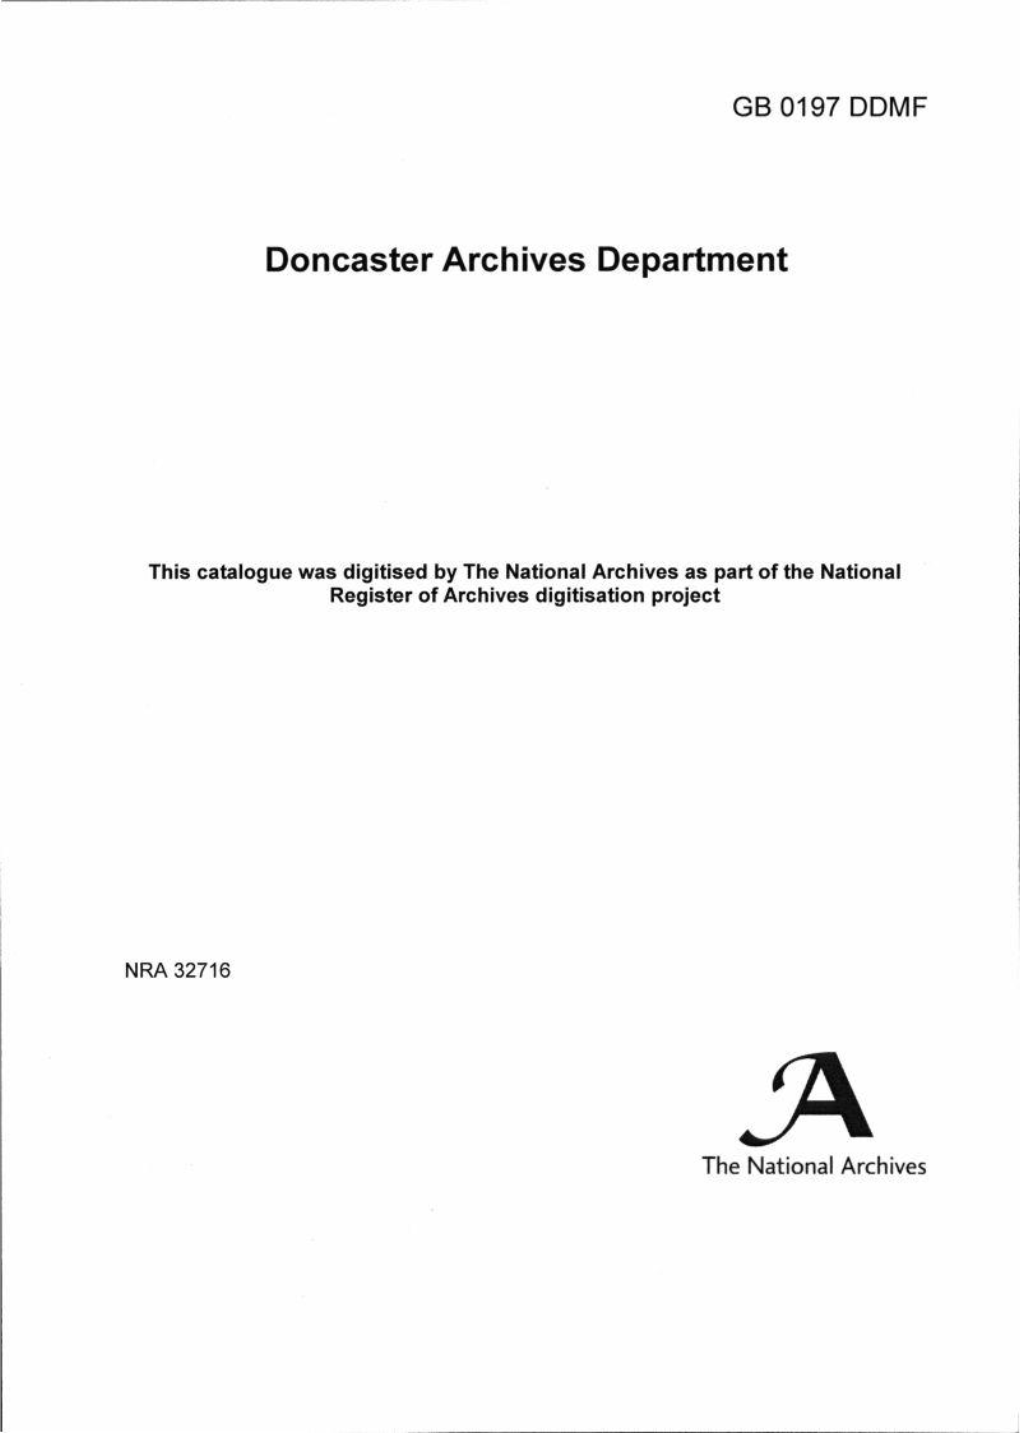 Doncaster Archives Department